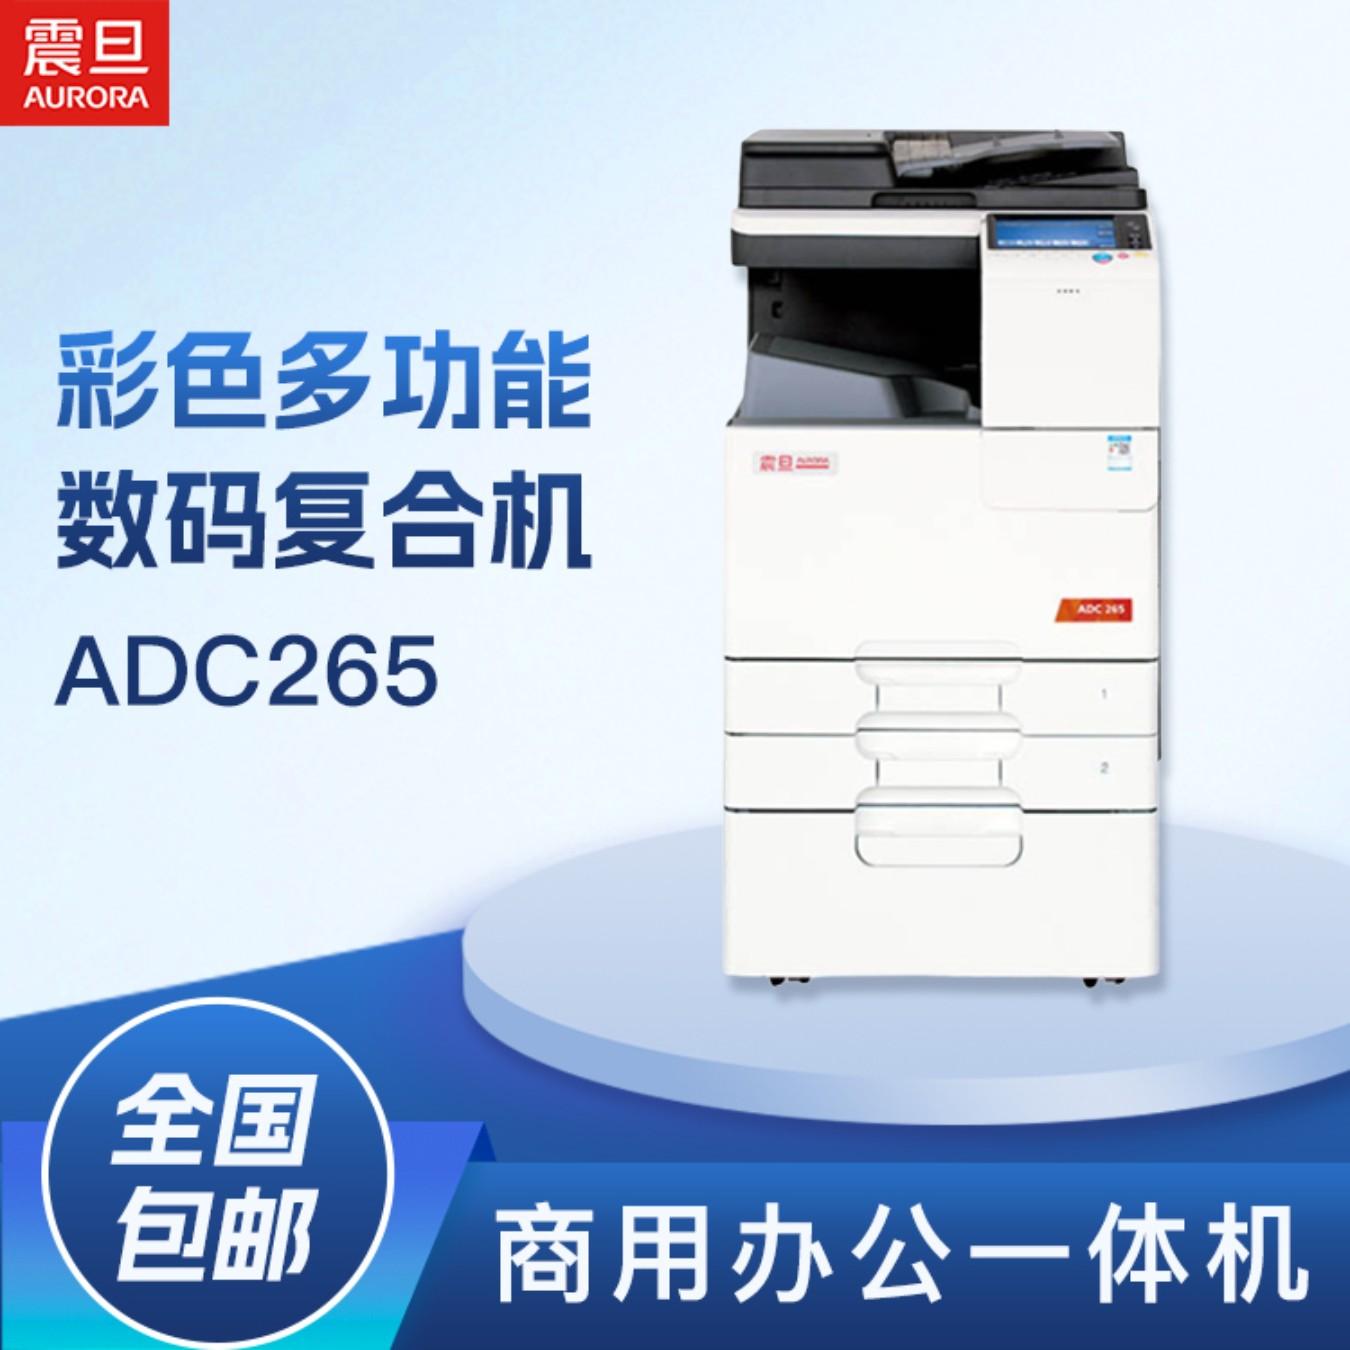 震旦(AURORA) ADC265 A3彩色数码复合机(打印/复印/彩色扫描/传真/标配双面自动送稿